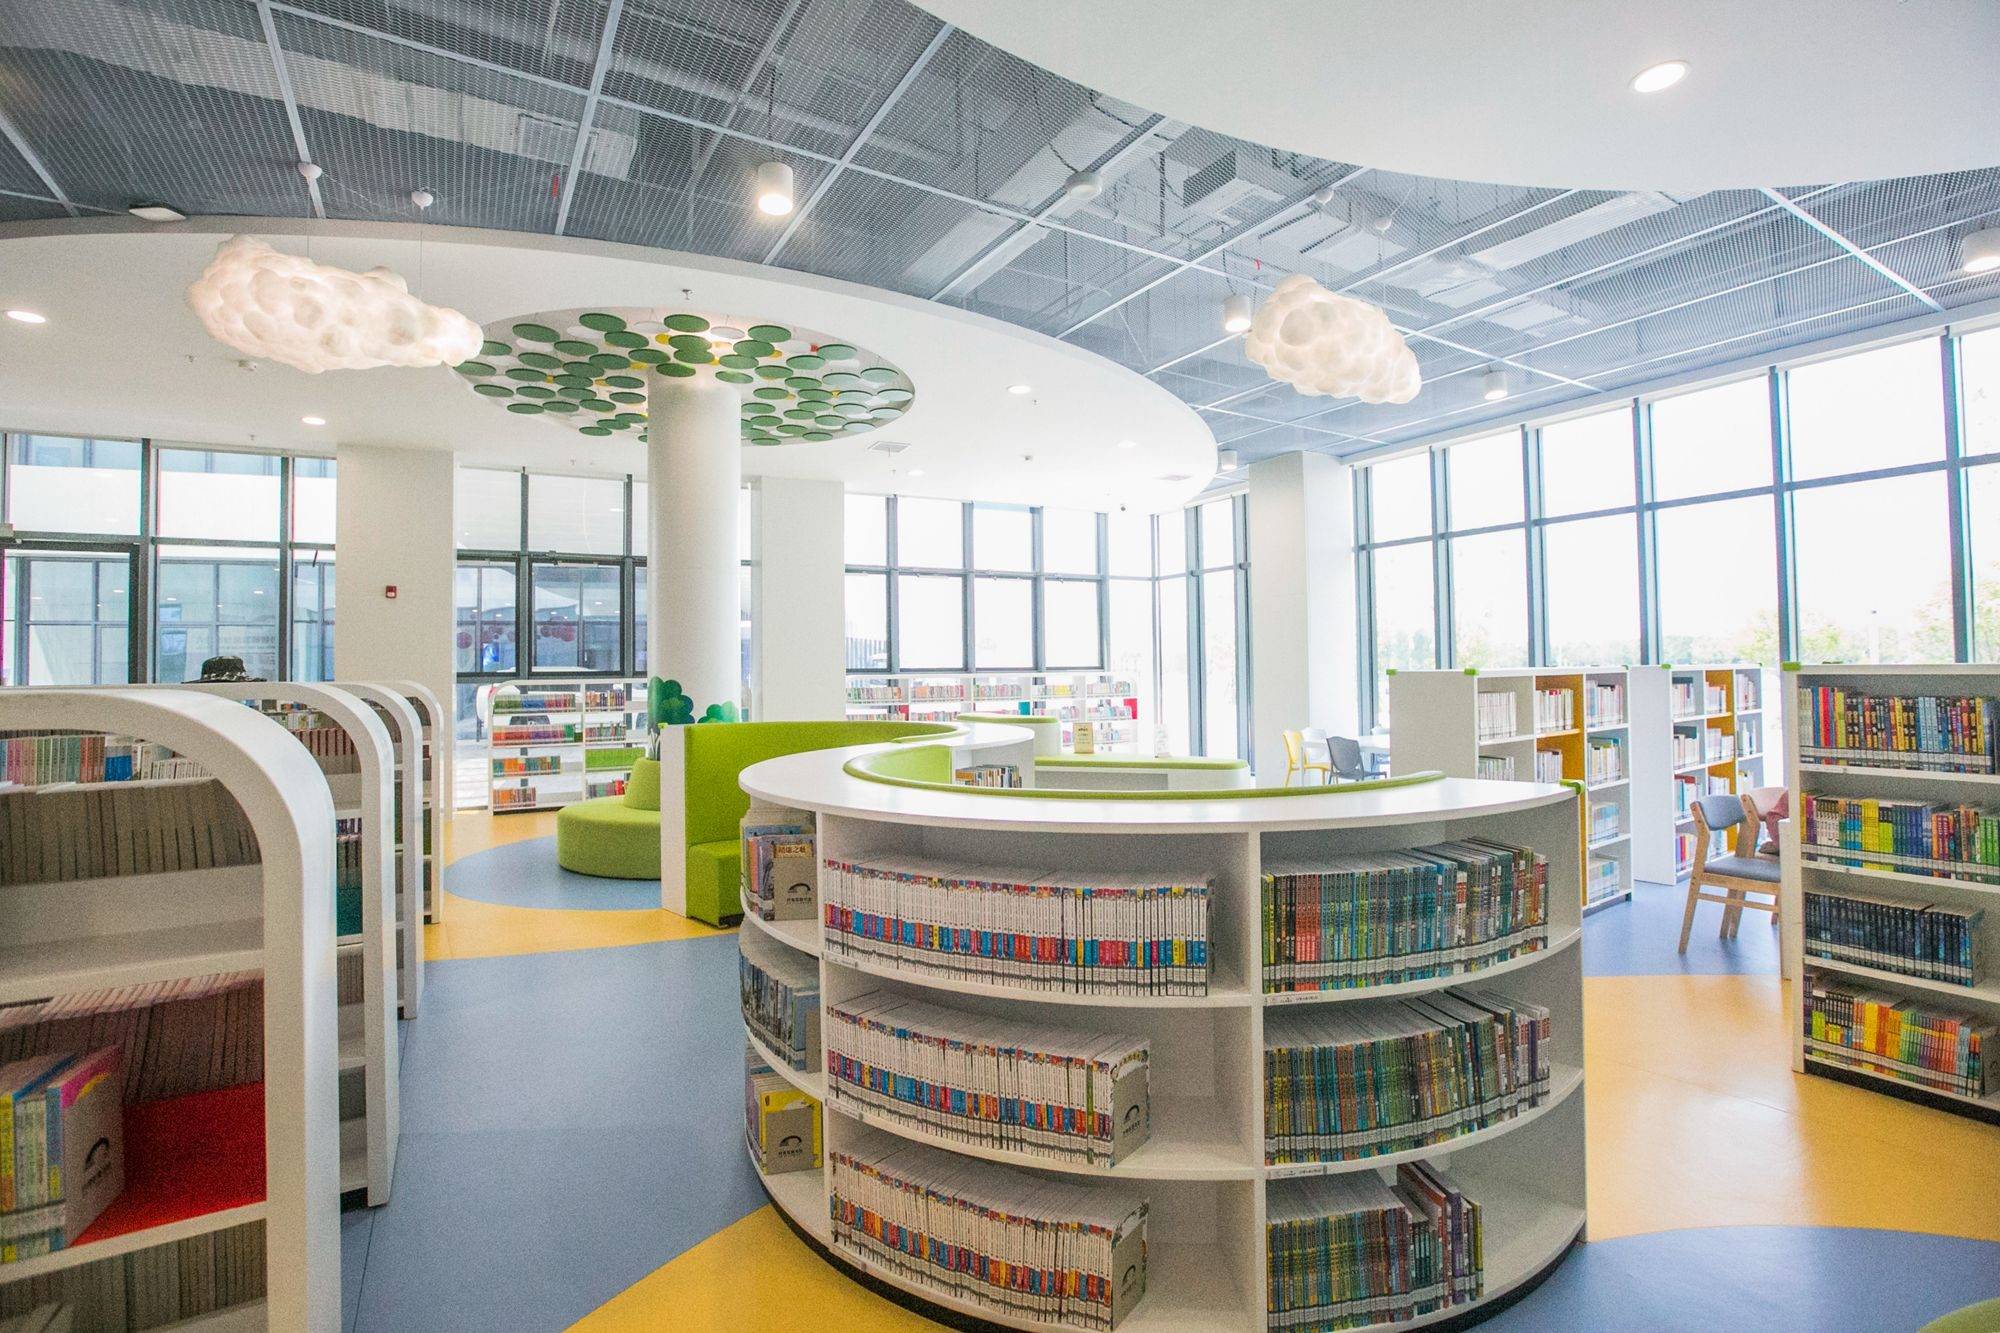 安徽六安有一座叶集区图书馆，环境优美，深受市民的喜爱